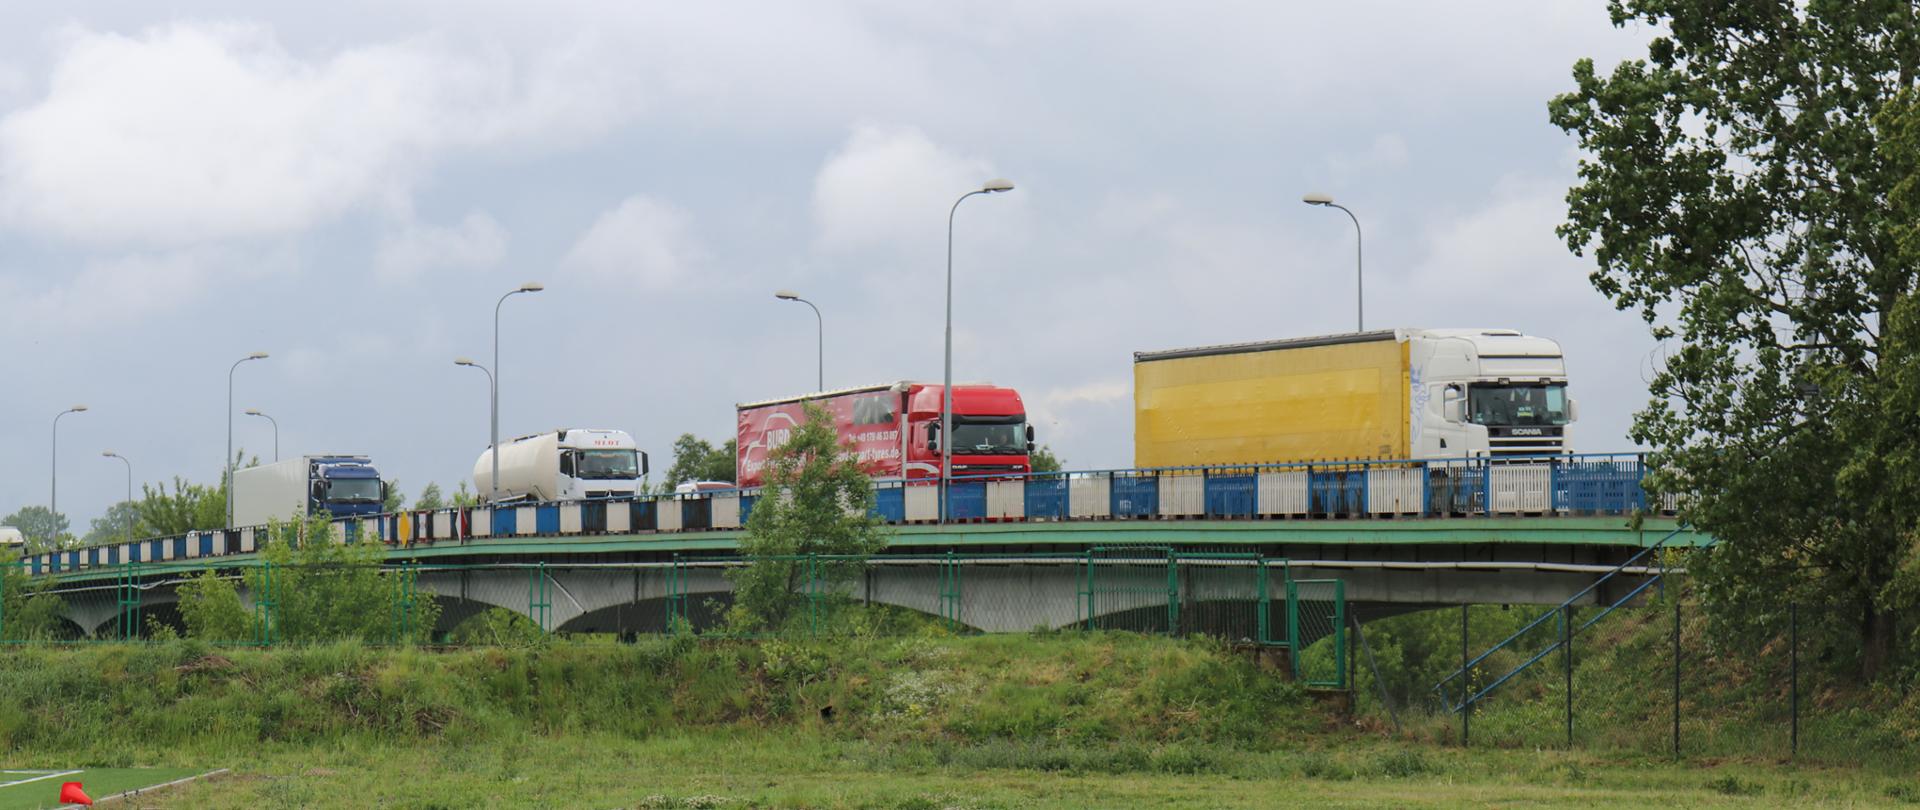 Cztery ciężarówki tzw. TIR-y jadą jedna za drugą po starym moście nad Narwią, w Łomży 